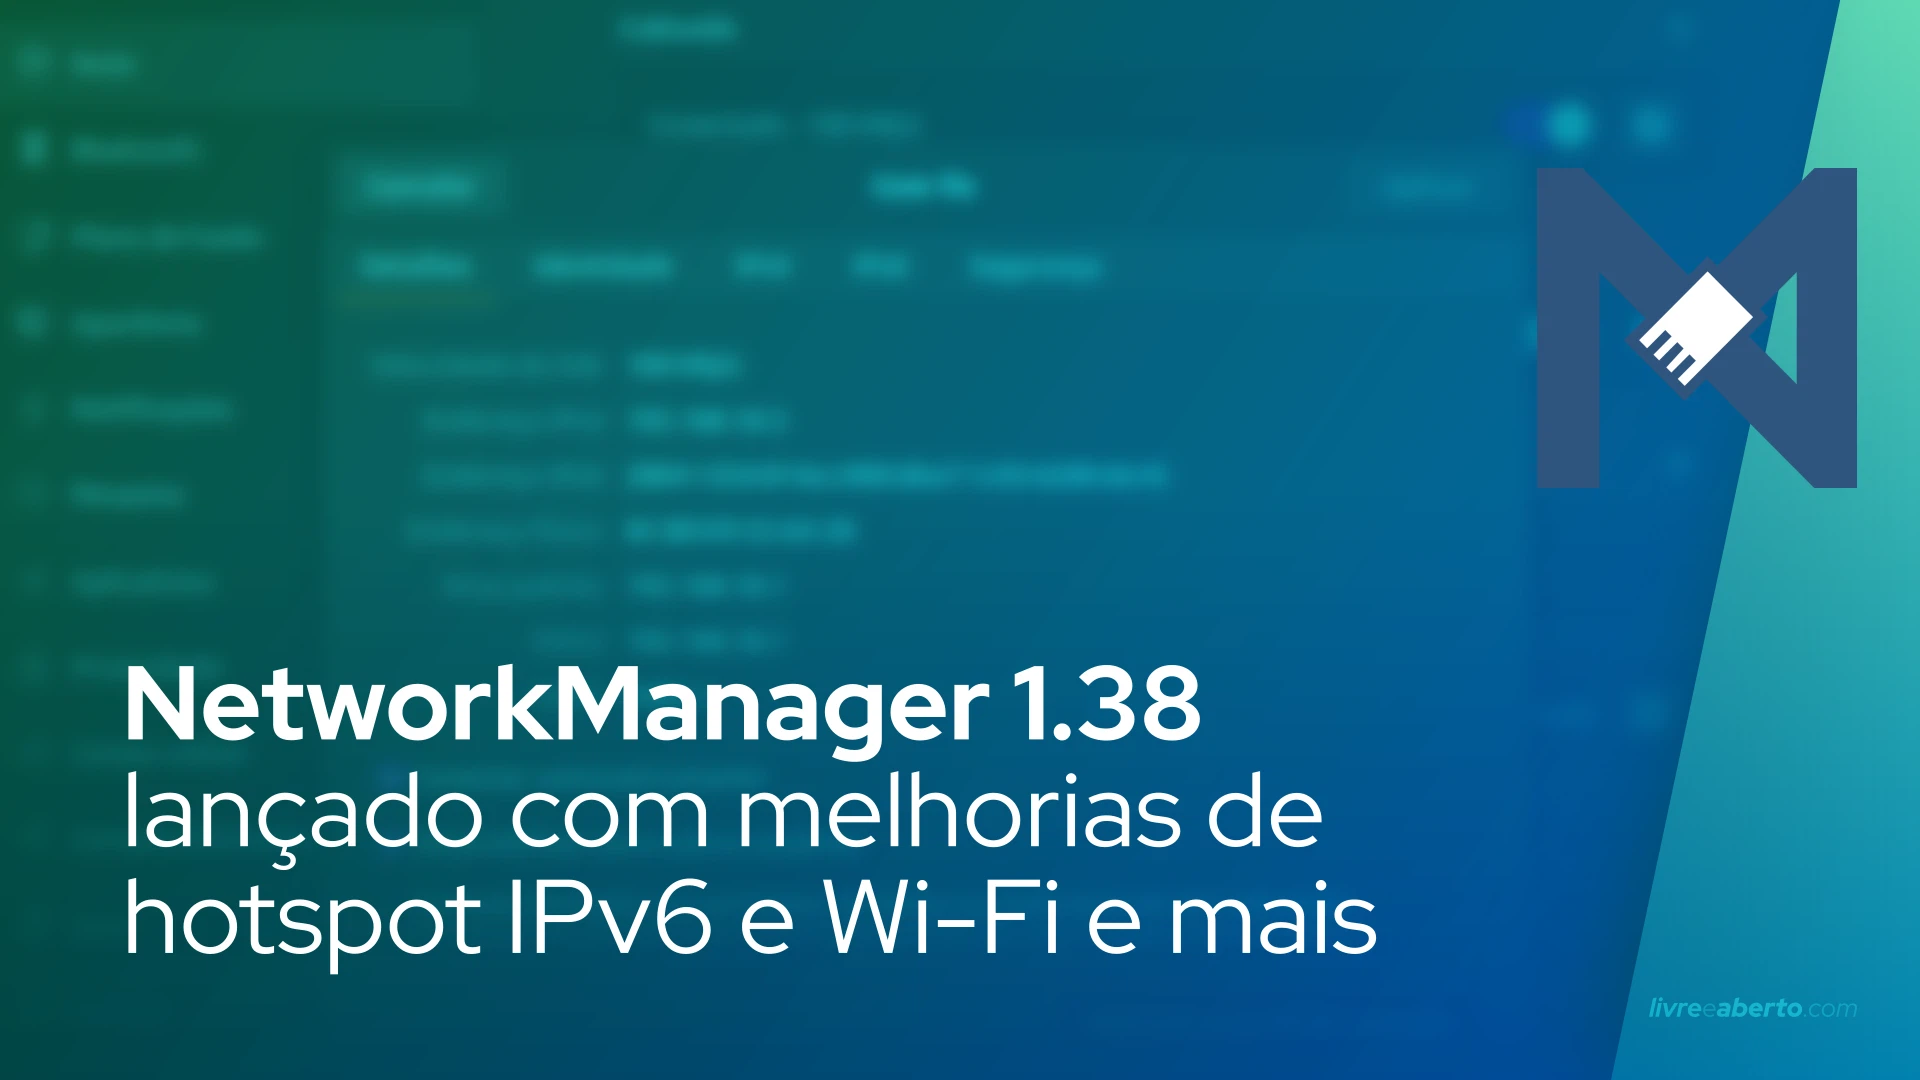 NetworkManager 1.38 lançado com melhorias de hotspot IPv6 e Wi-Fi e mais